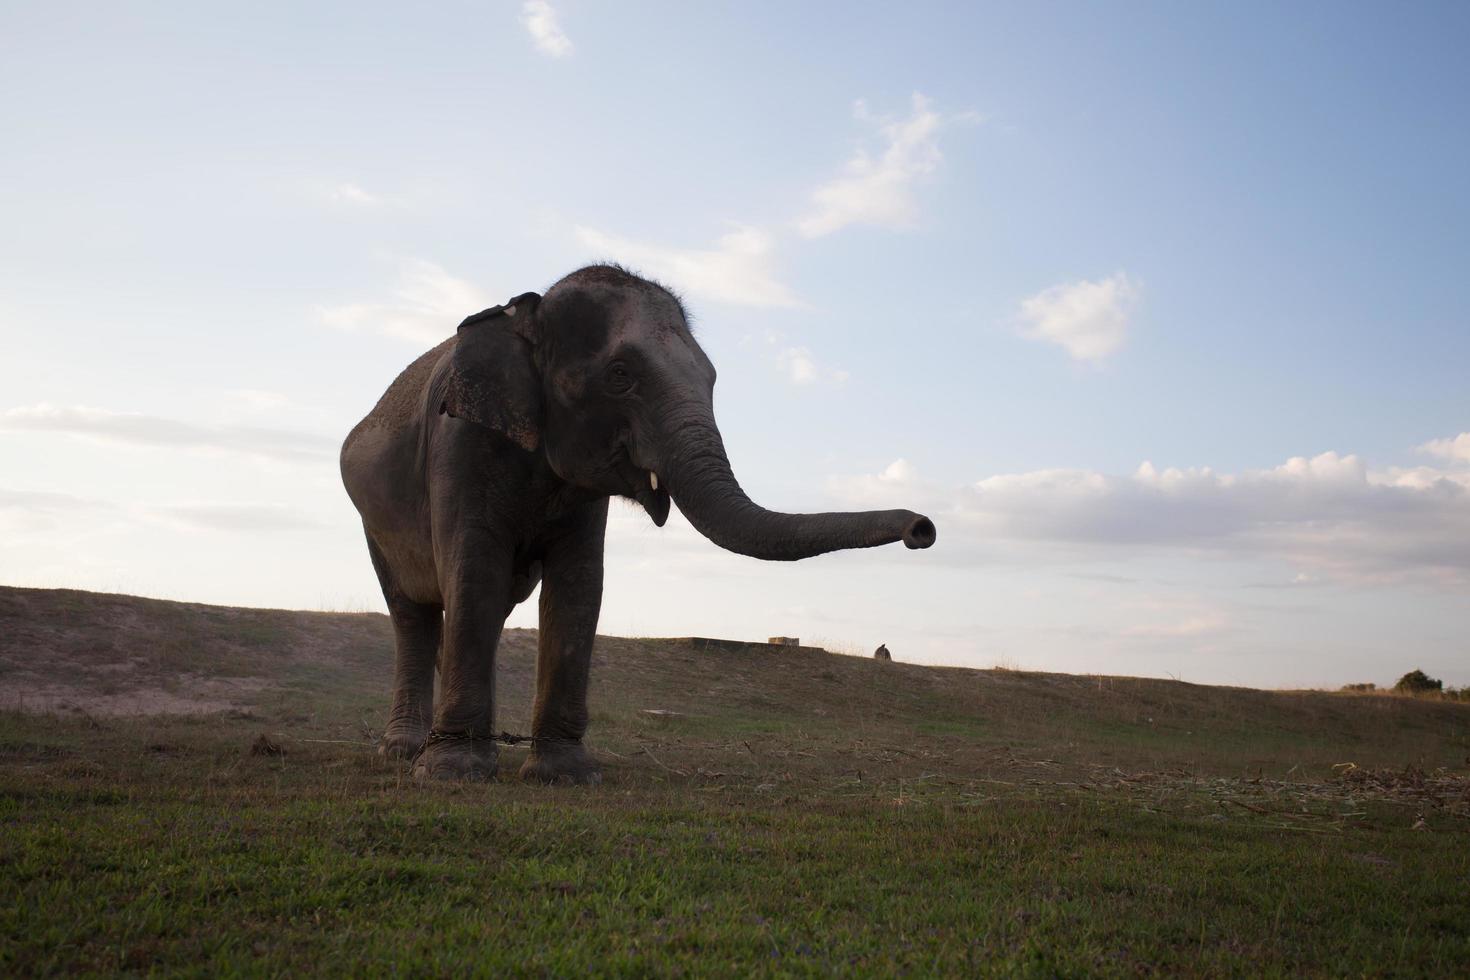 azië olifant in surin, thailand foto